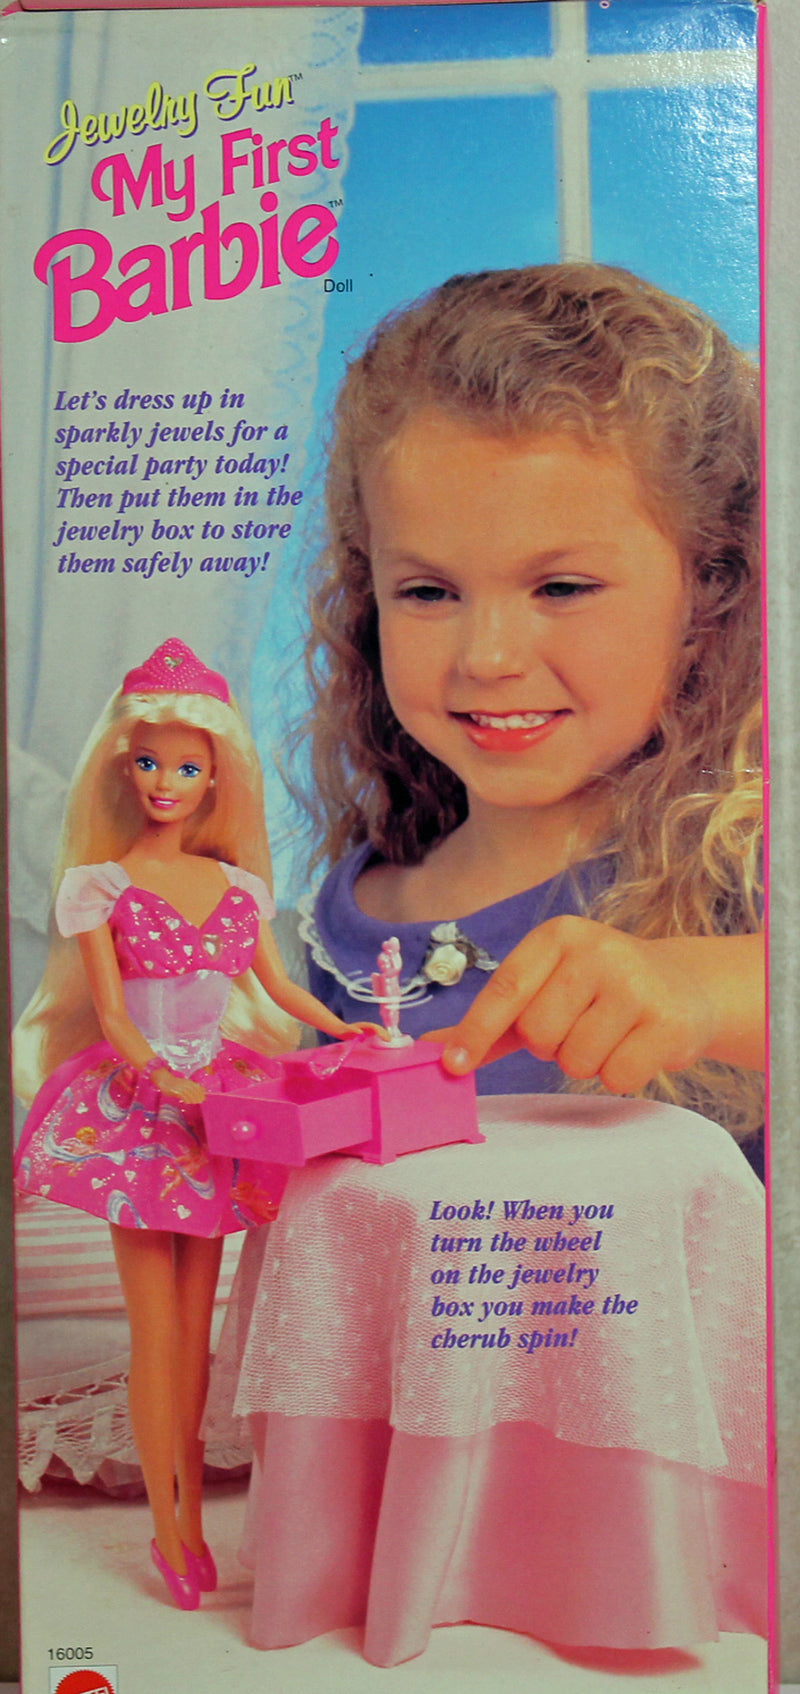 1996 Jewelry Fun Barbie (16005)